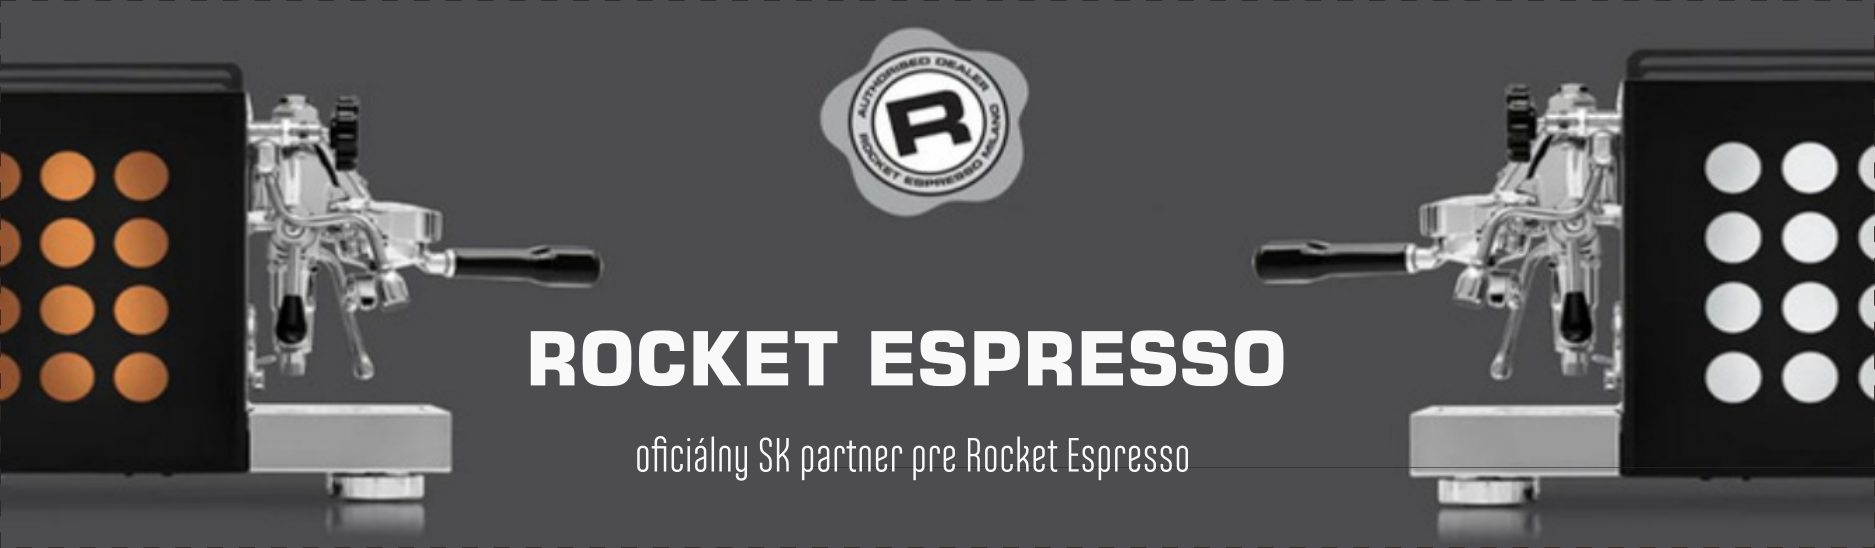 rocket espresso